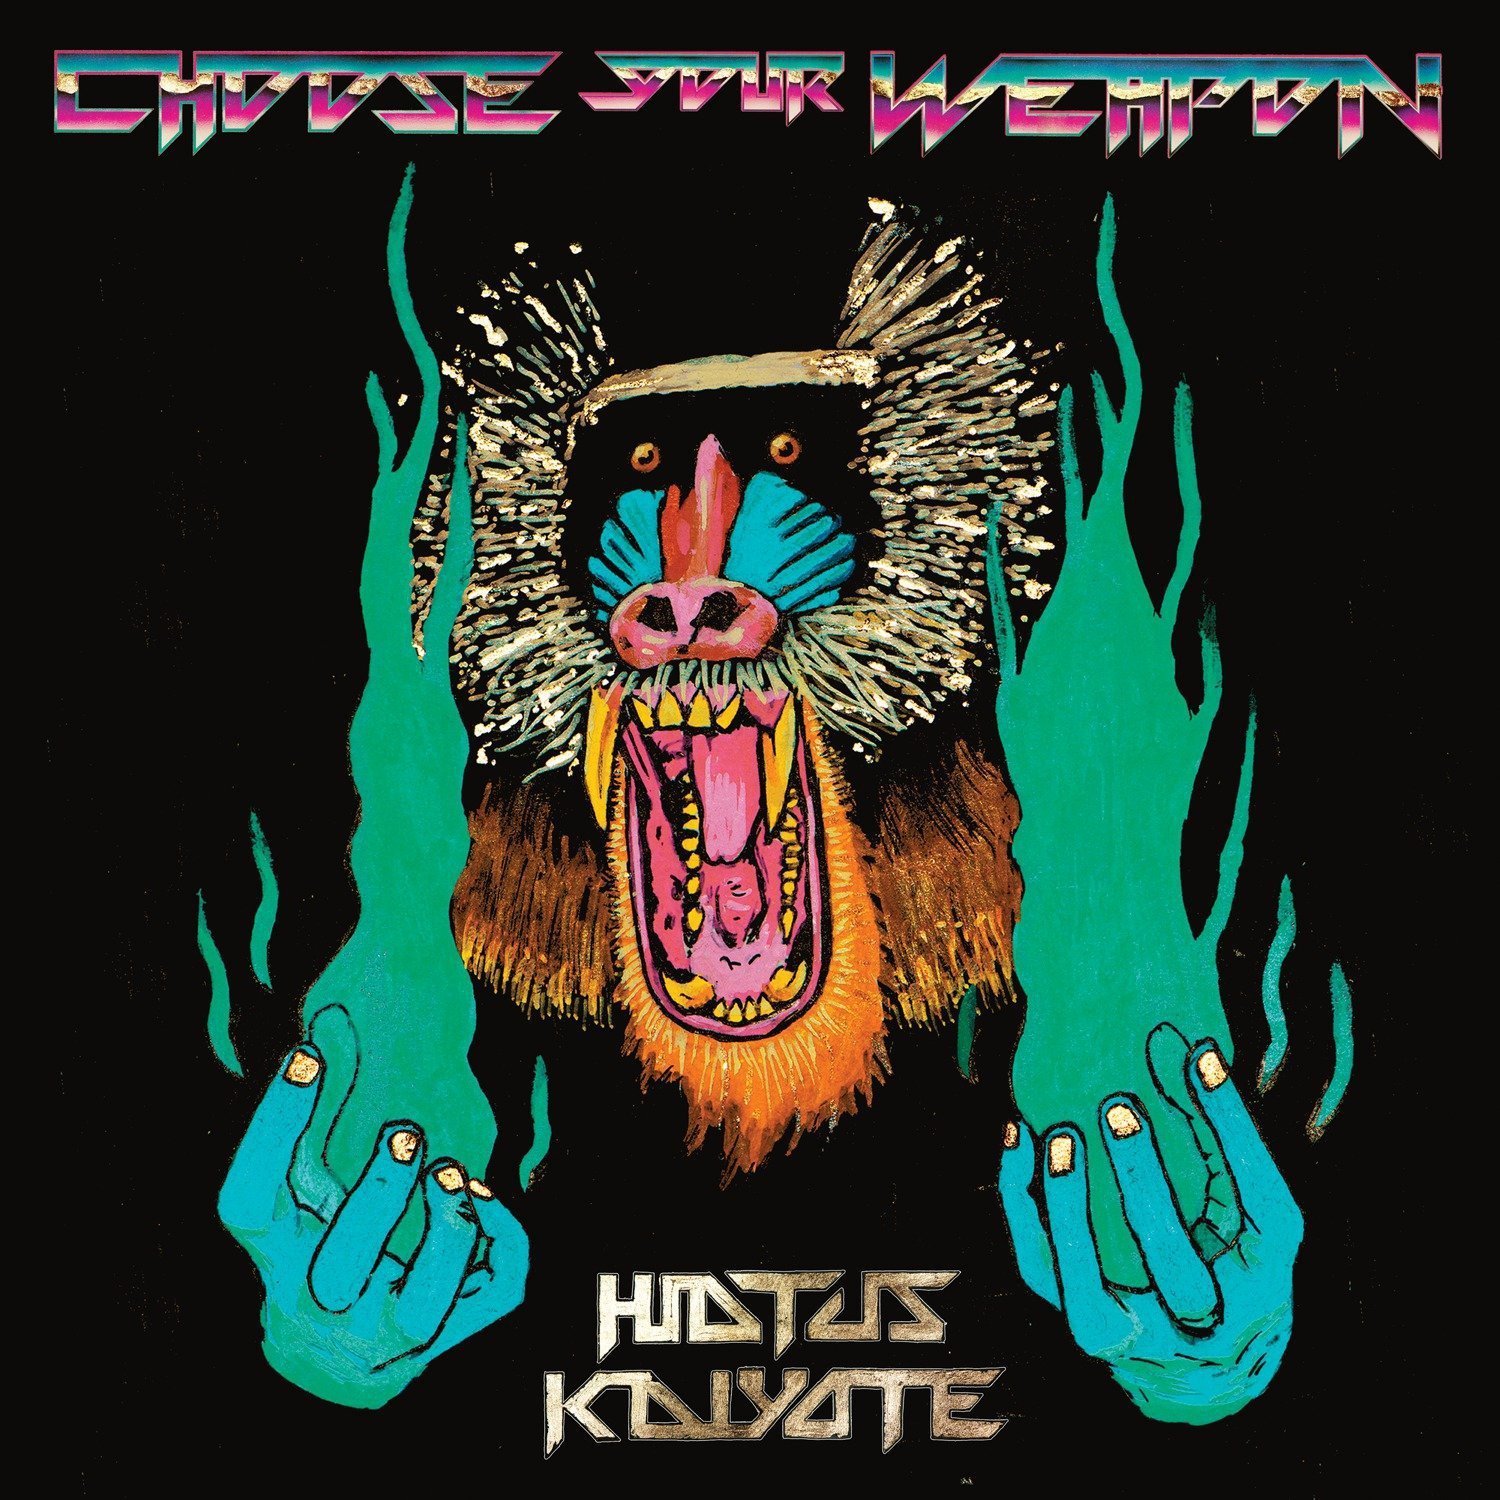 hiatus kaiyote album cover